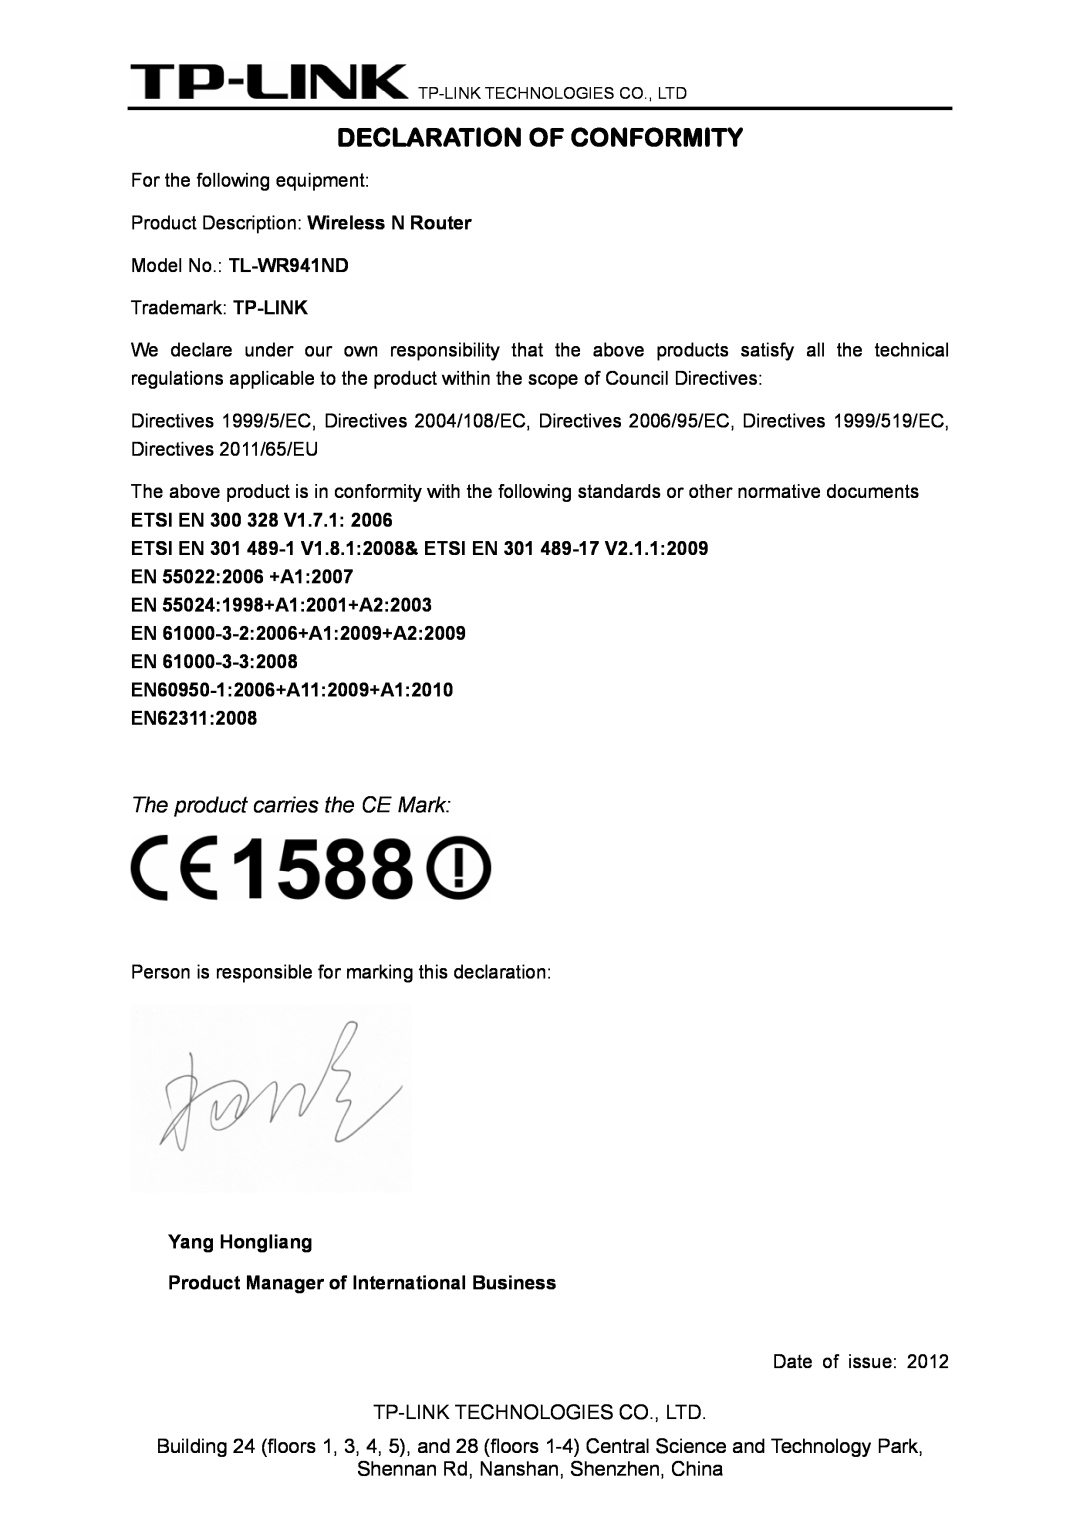 TP-Link TL-WR941ND manual Declaration Of Conformity, ETSI EN 300 328 V1.7.1, EN60950-12006+A112009+A12010 EN623112008 